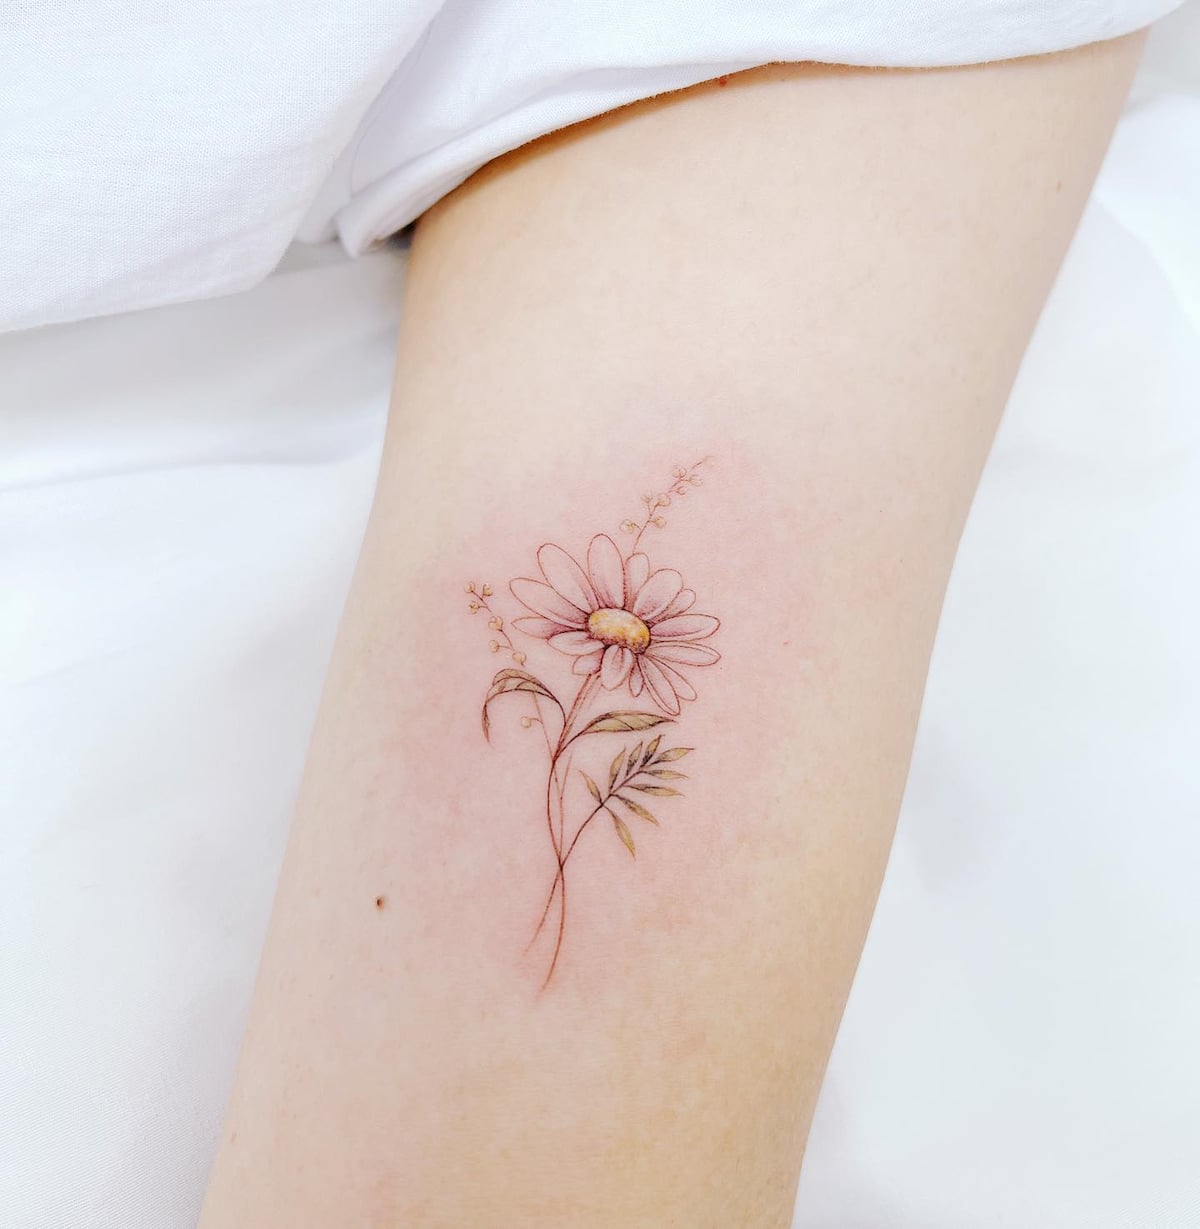 A Dreaming Daisy by Jakenowicz Temporary Tattoo - Set of 3 – Tatteco